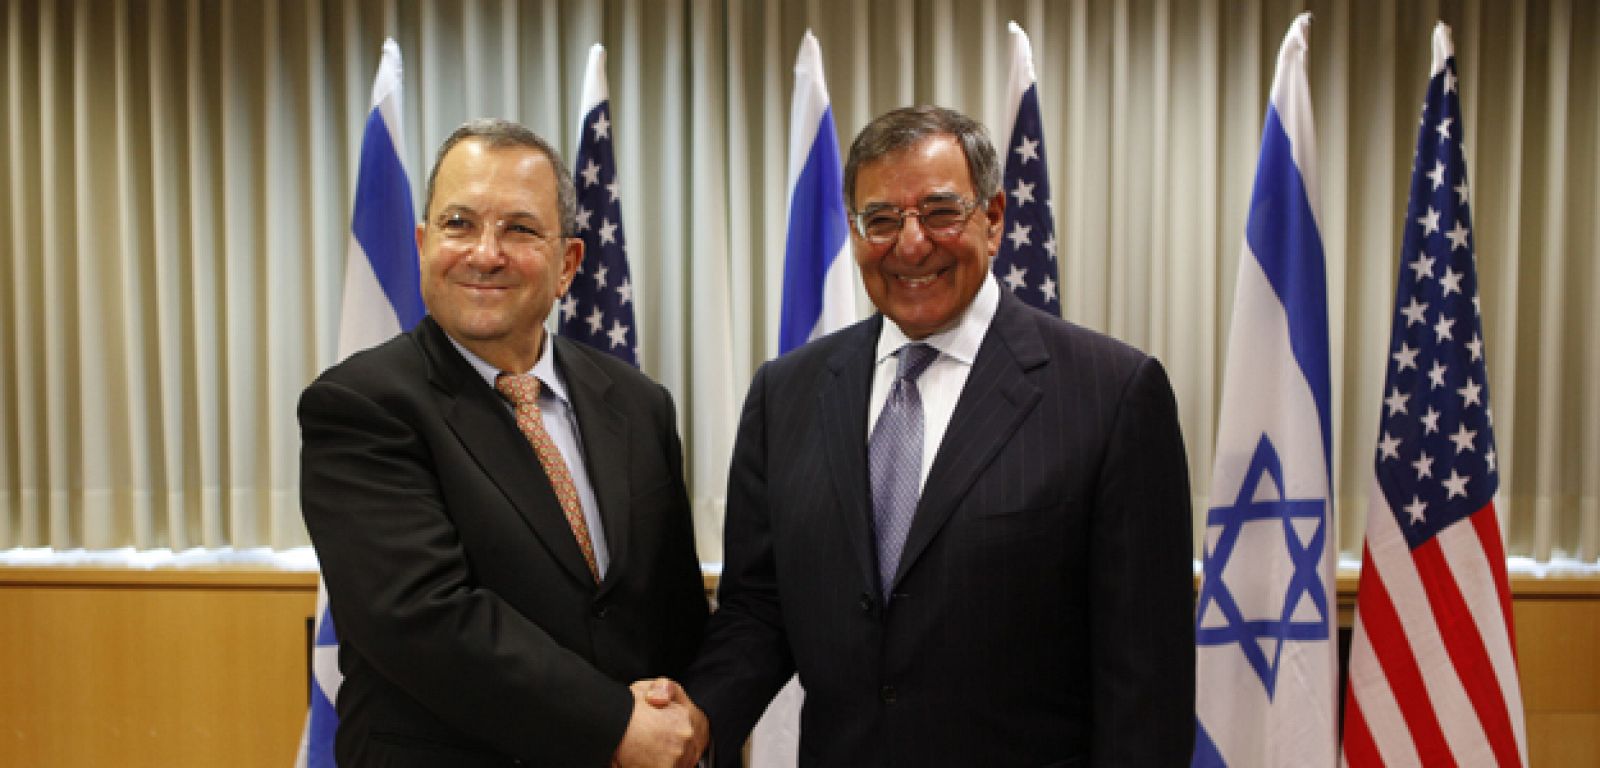 El secretario de Defensa de Estados Unidos, Leon Panetta, y el ministro de Defensa israelí, Ehud Barak, se reúnen este miércoles en Israel para tratar el tema del programa nuclear iraní.